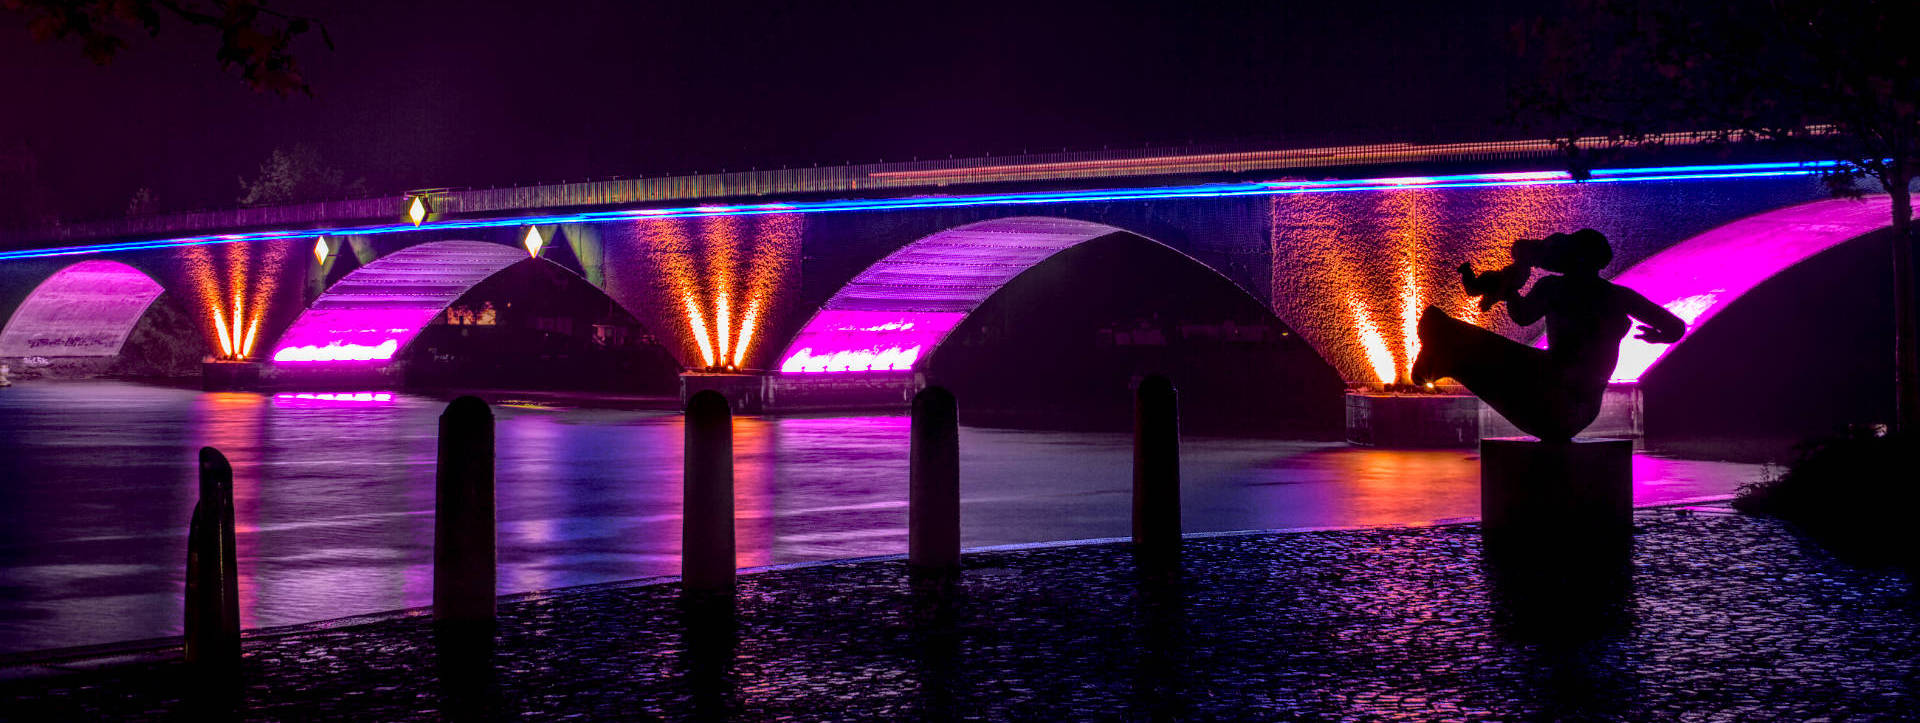 Beleuchtung der Stadtbrücke Schwedt/Oder